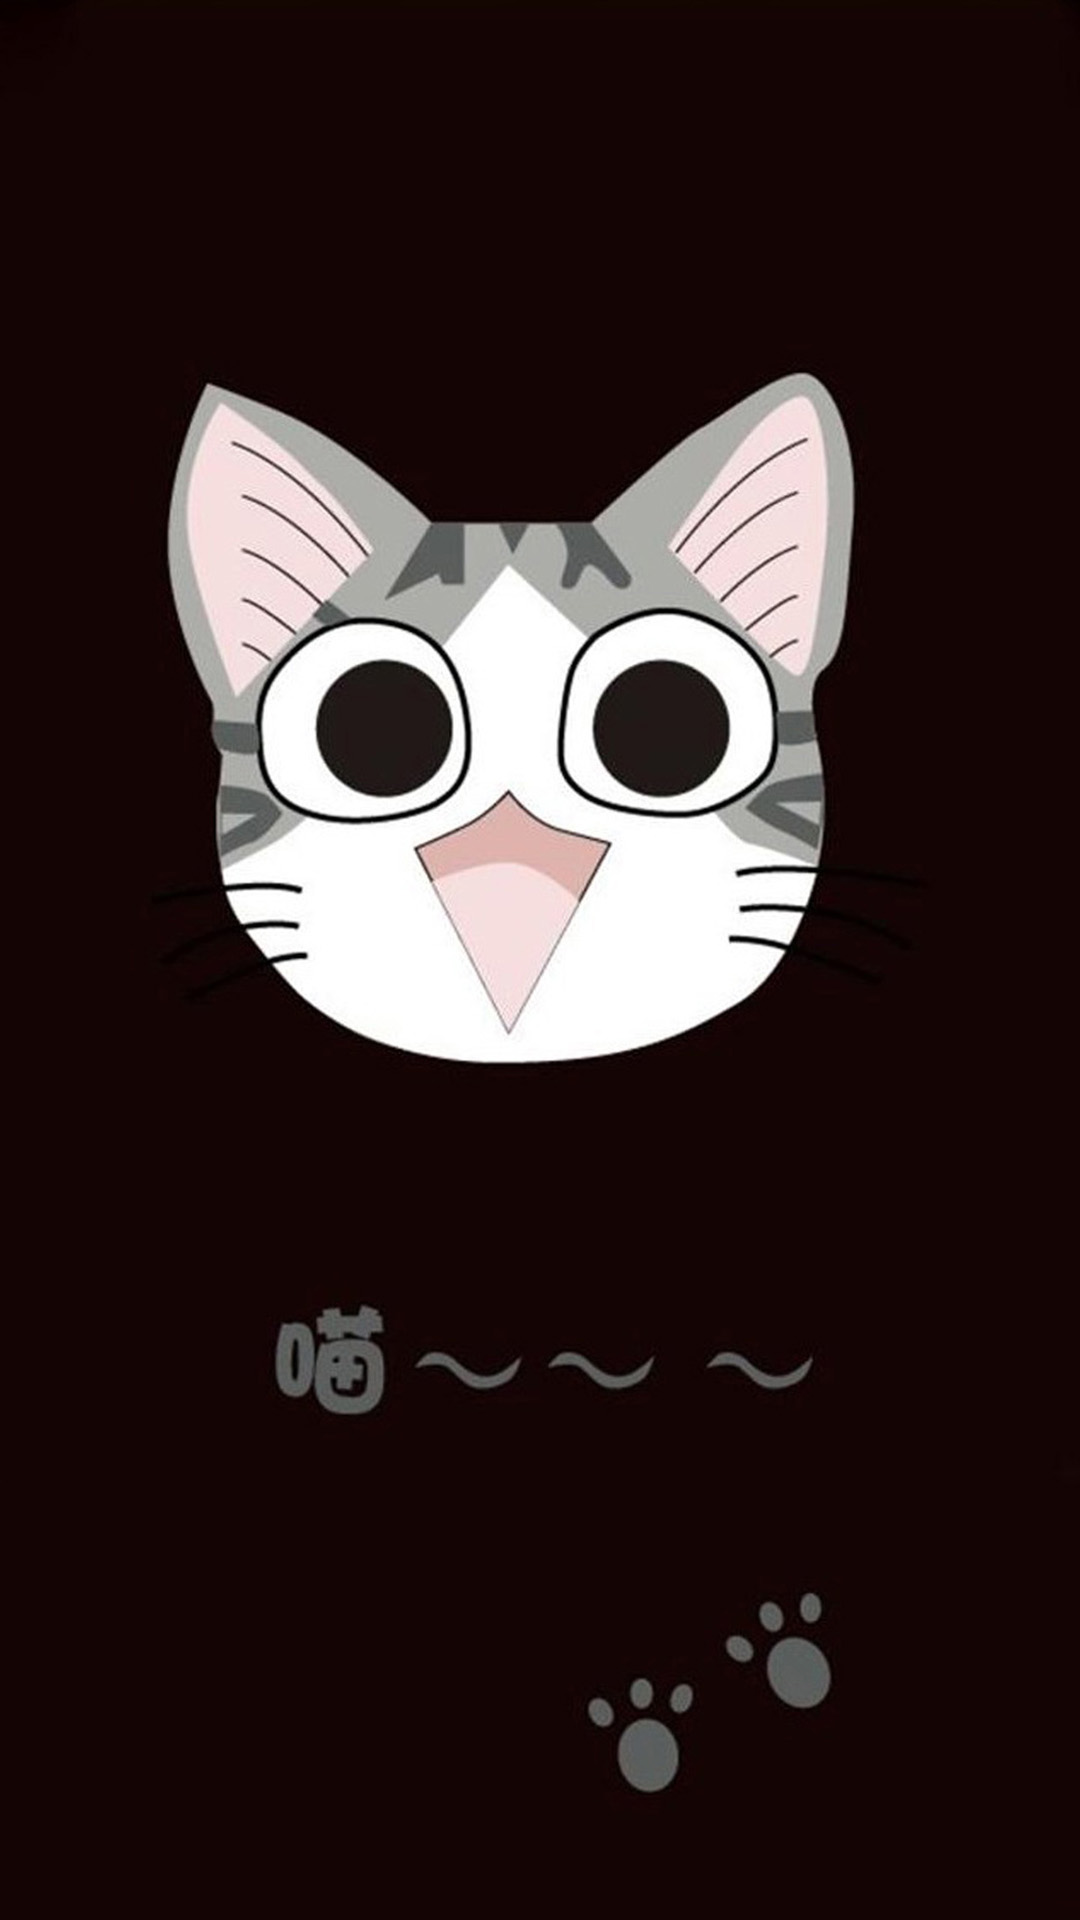 Cute Cat Cartoon Galaxy S5 Wallpaper